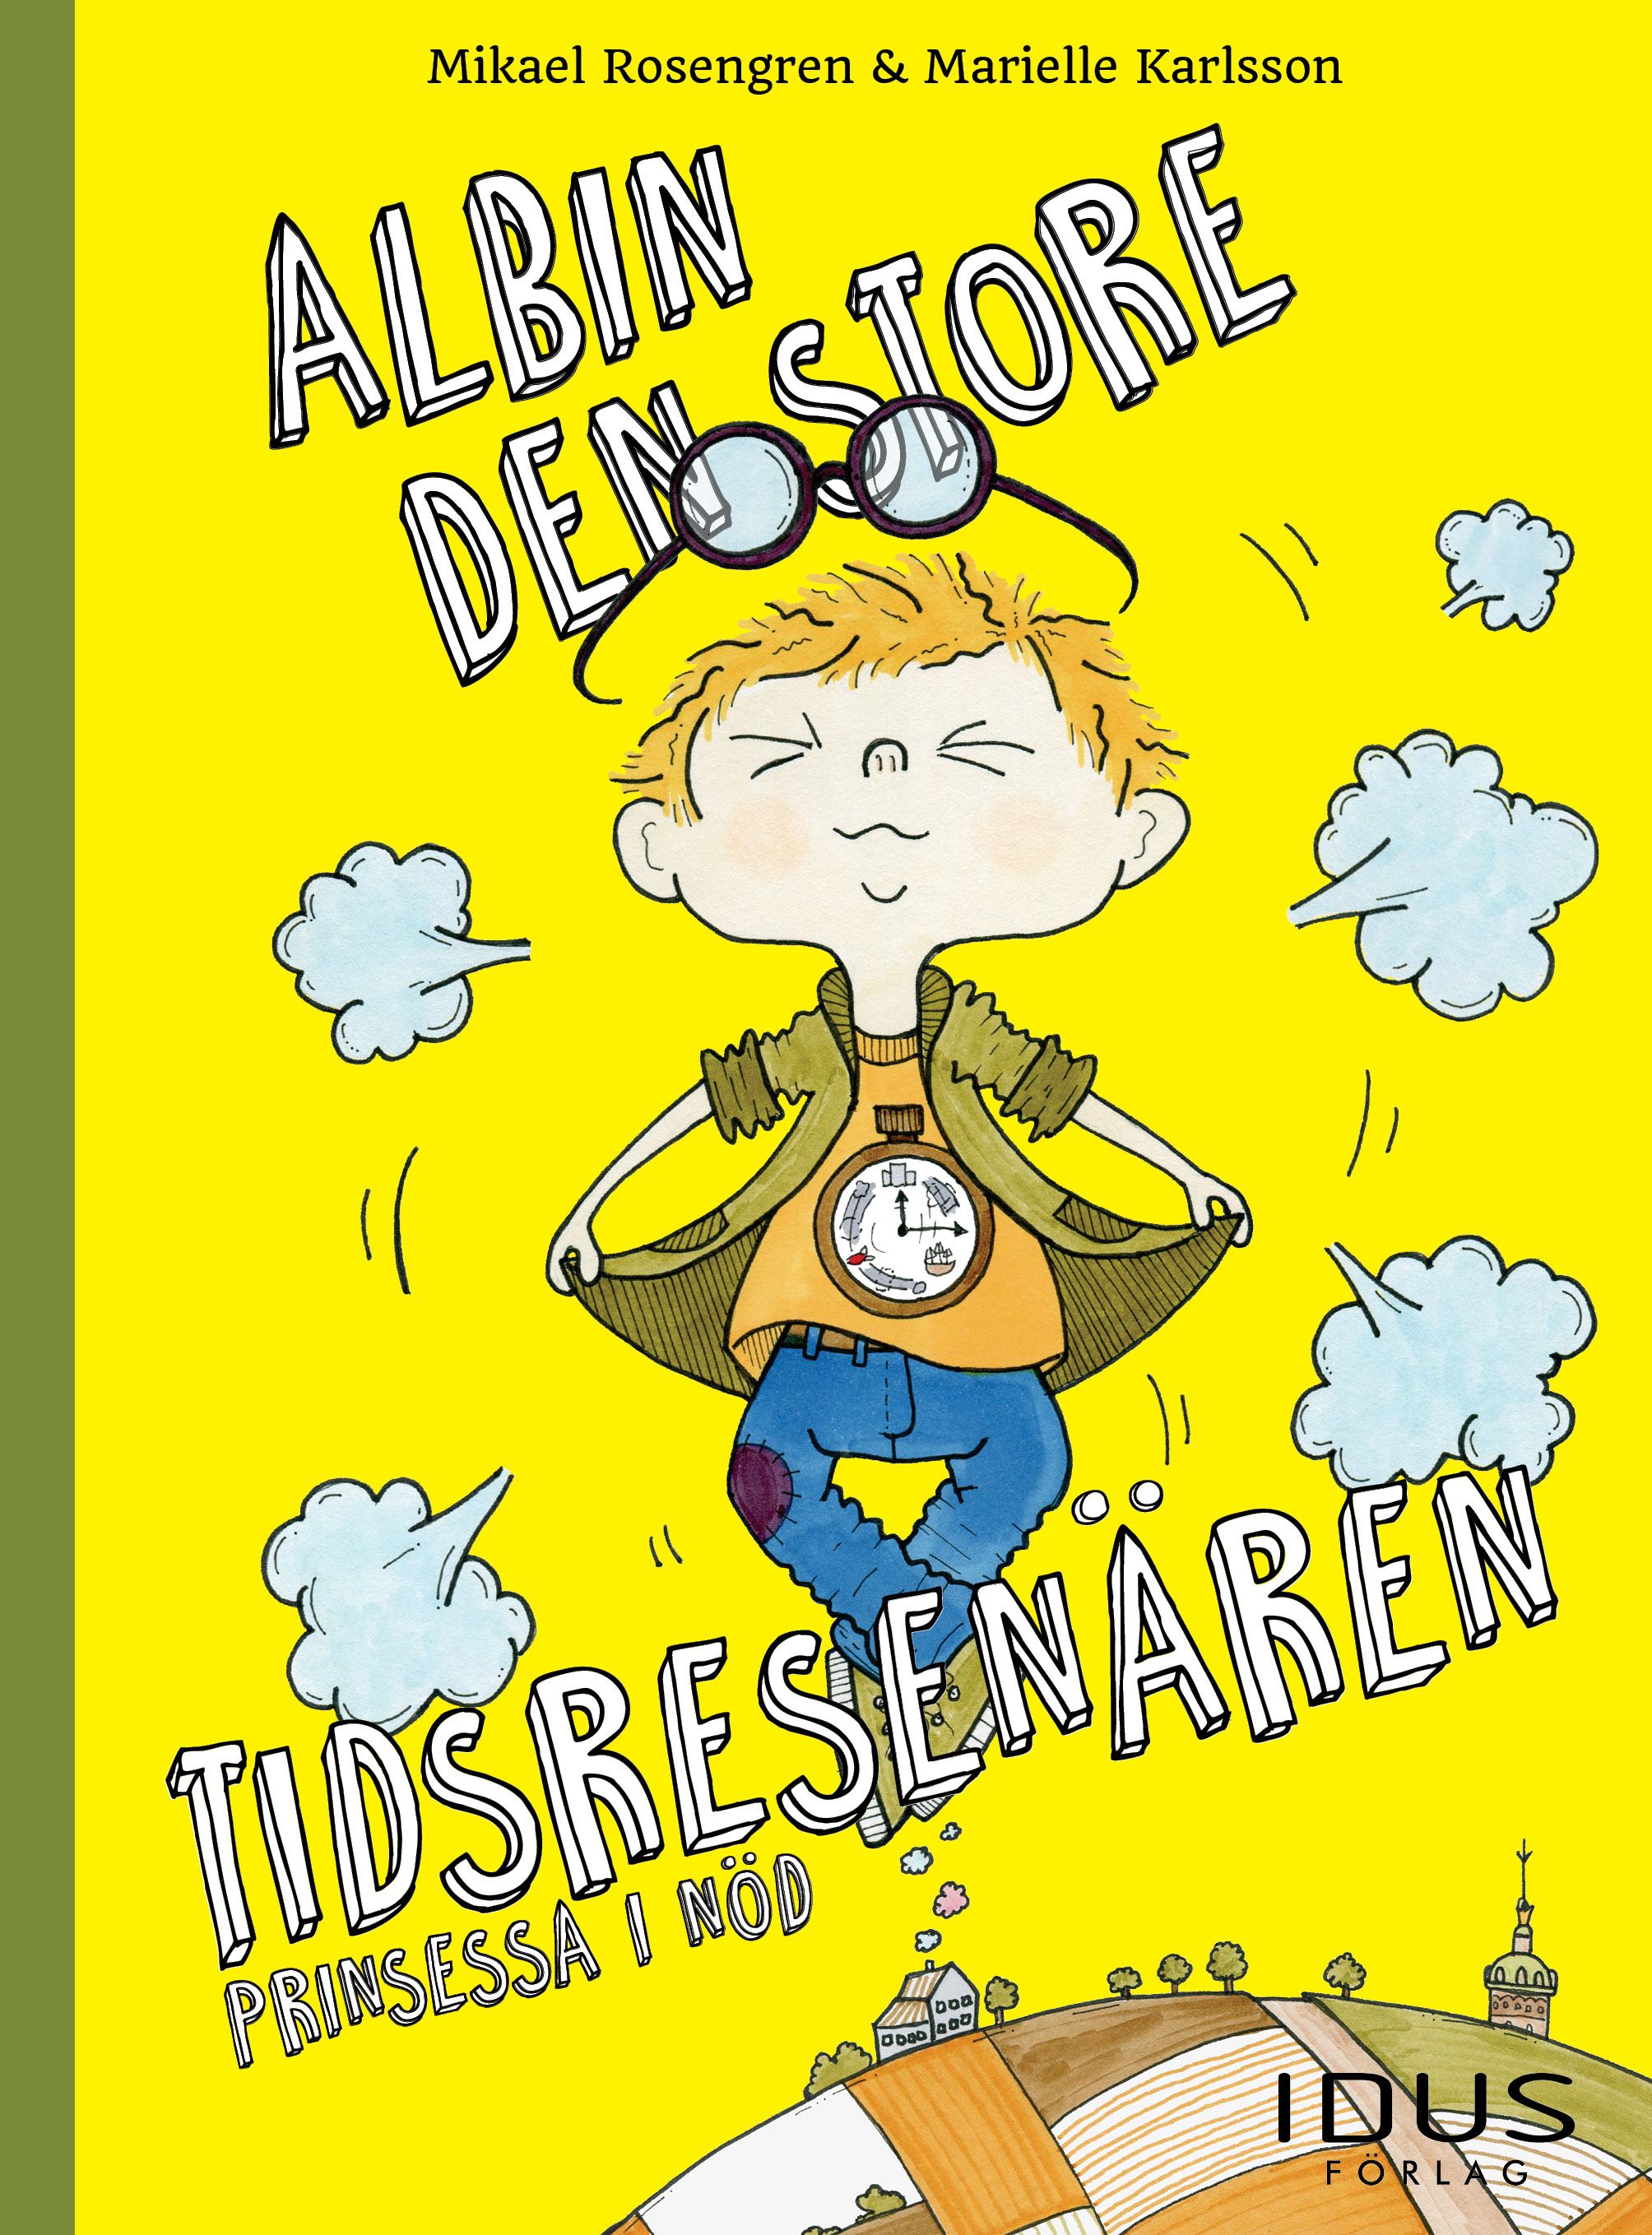 Albin, den store tidsresenären - Prinsessa i nöd, e-bok av Mikael Rosengren